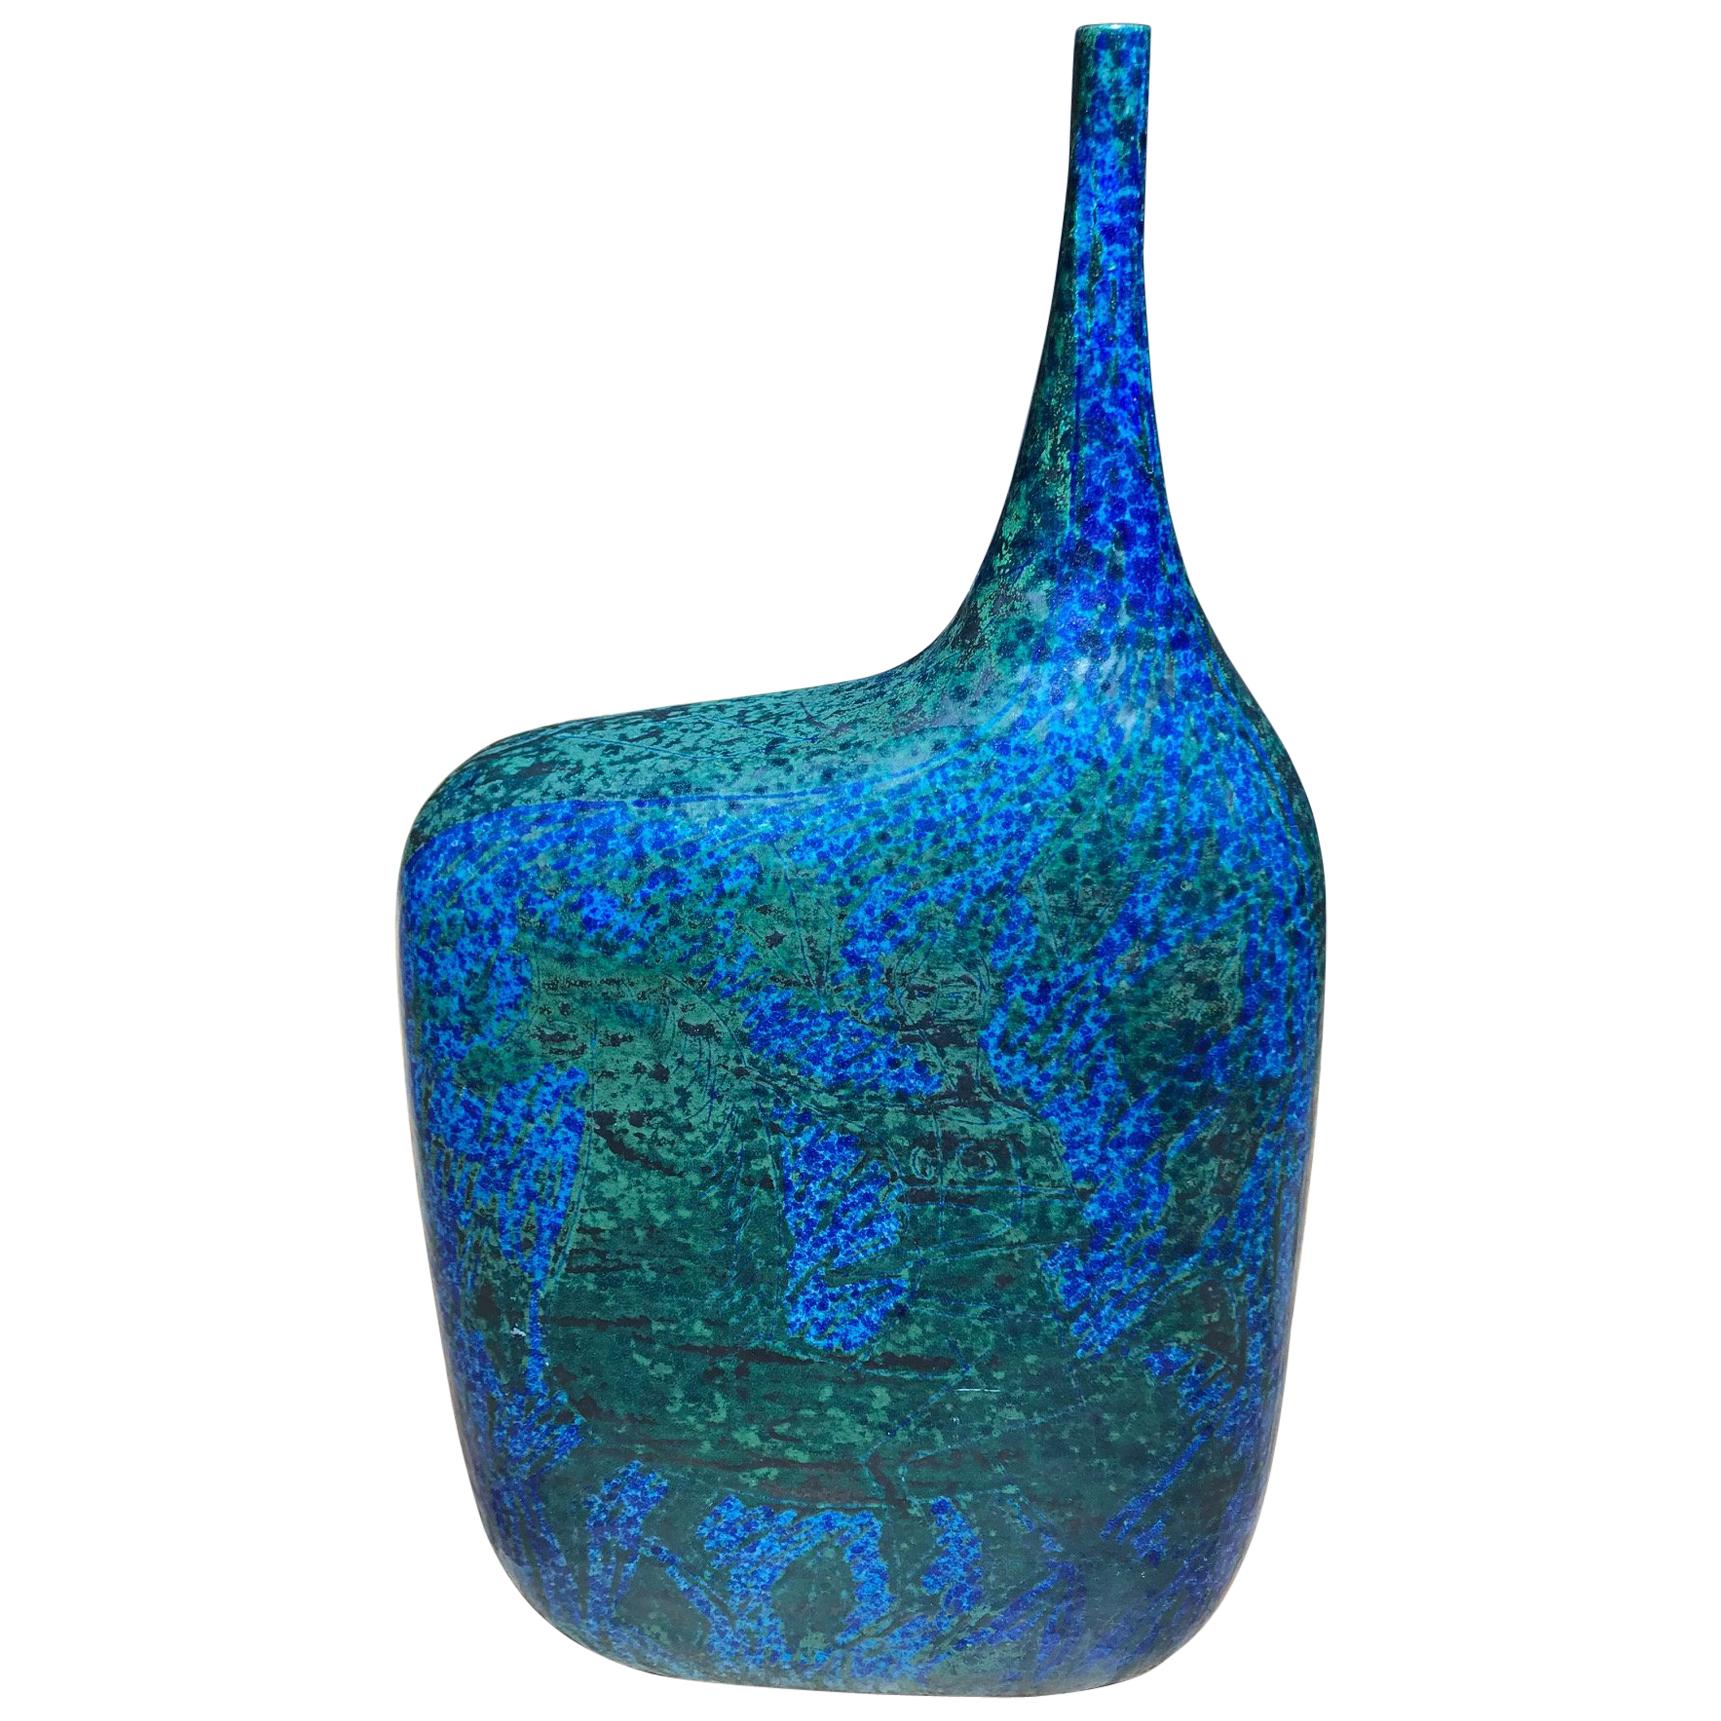 Keramikvase in Blau und Grün im Stil von Marcello Fantoni